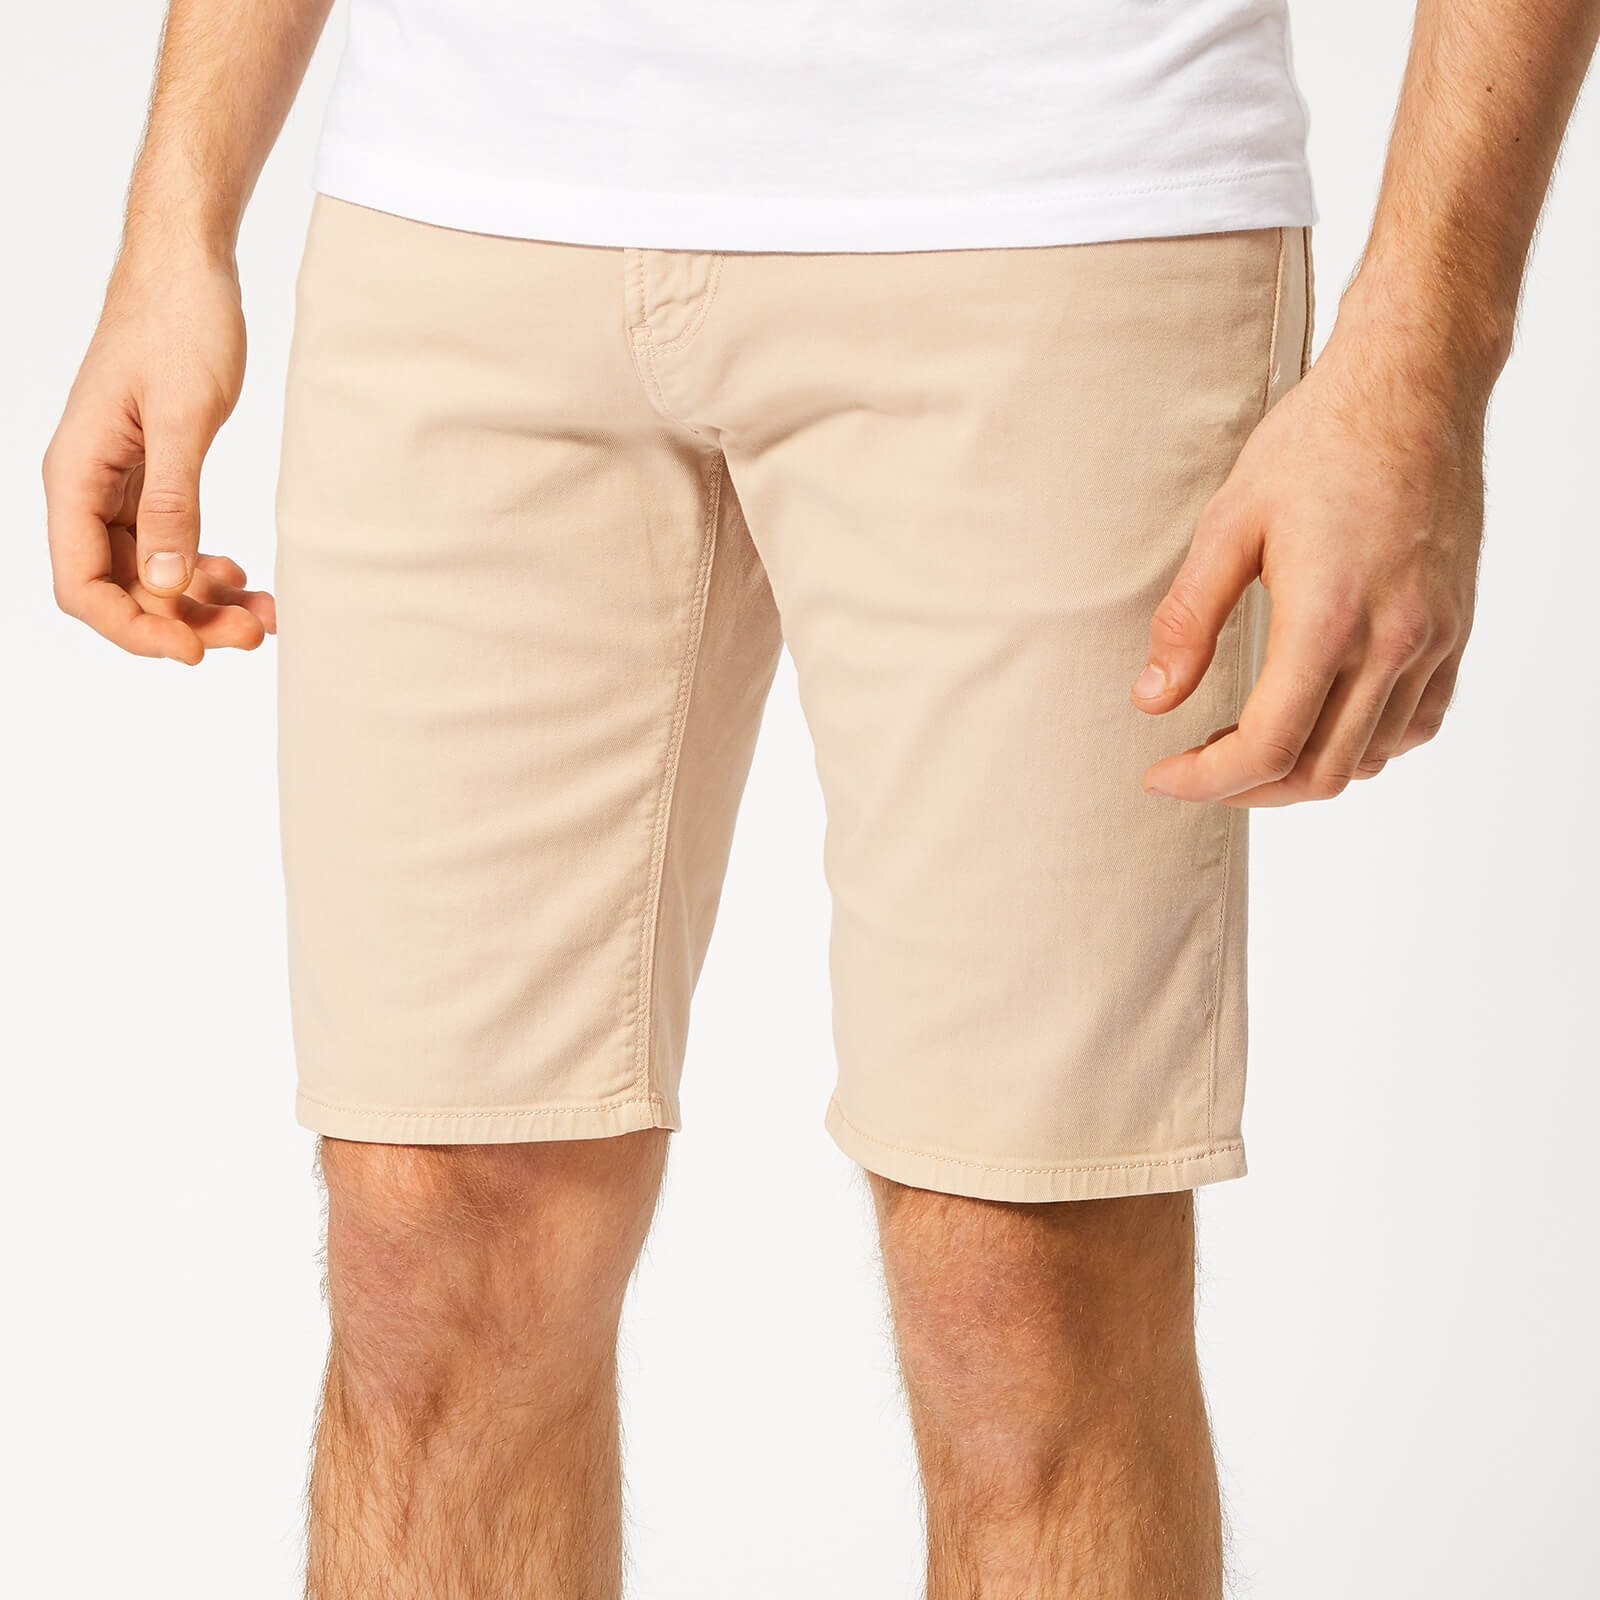 emporio armani 5 pocket shorts